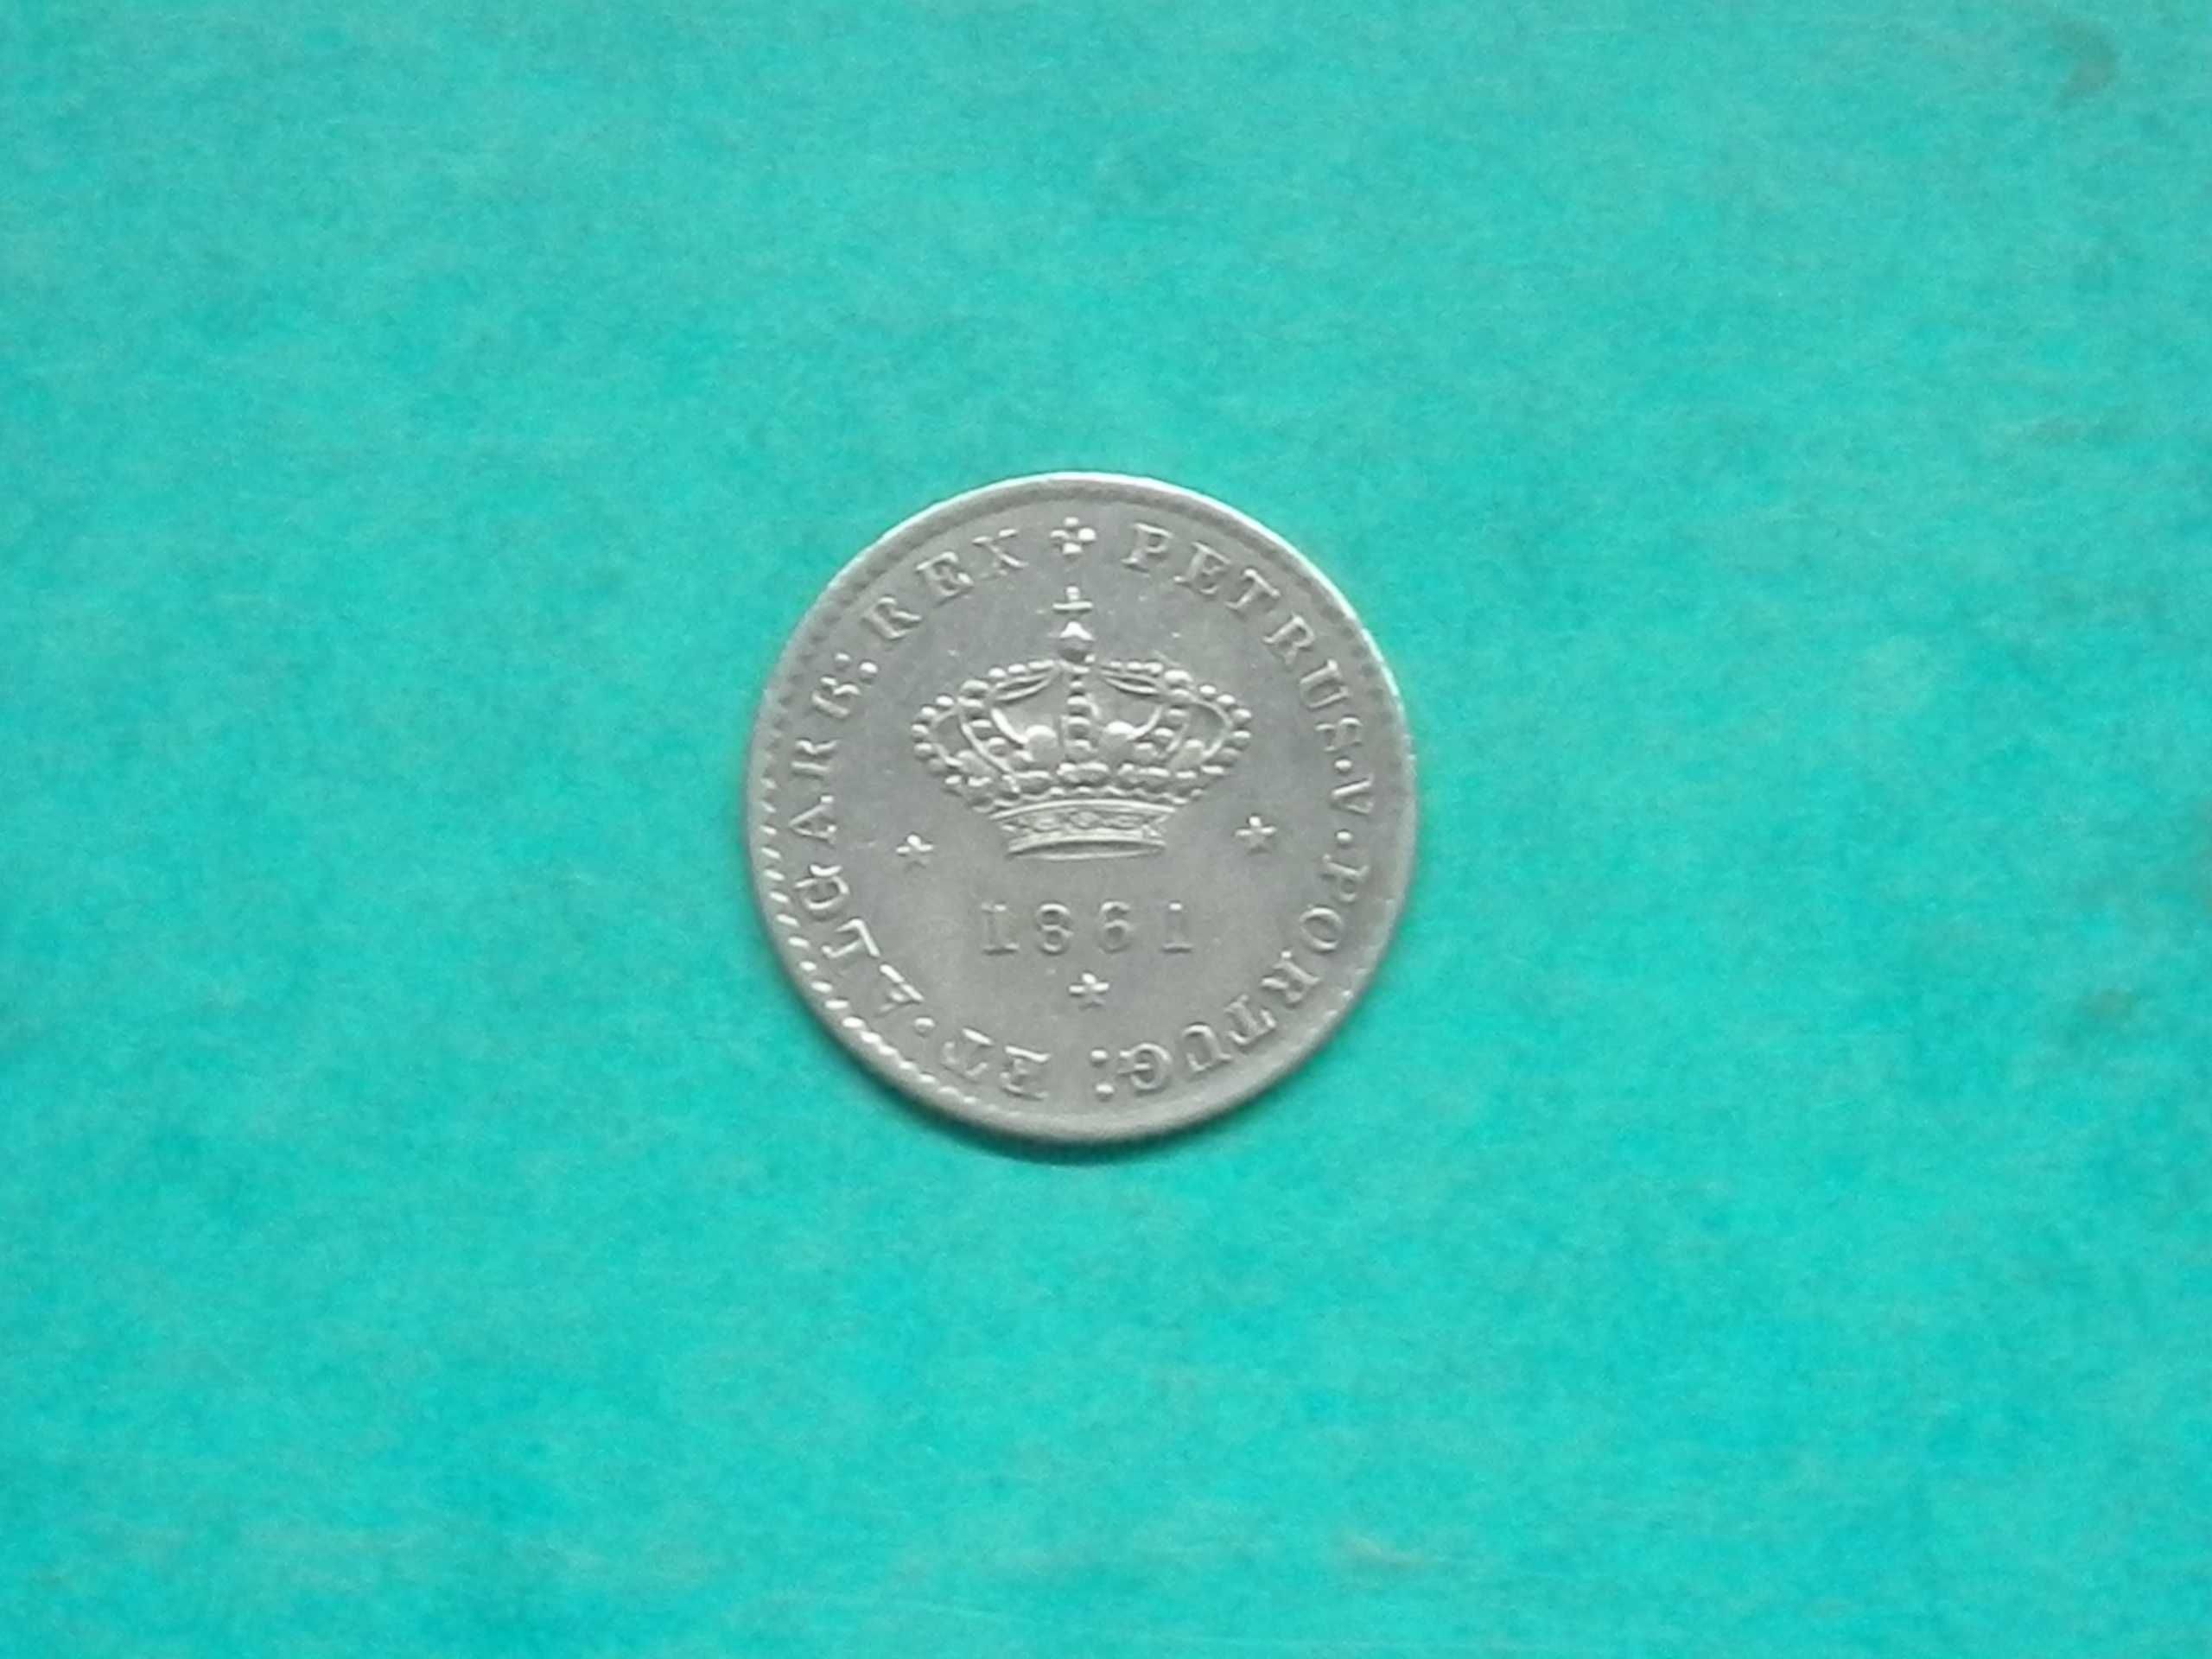 1094 - Pedro V: 50 réis 1861 prata, por 15,00